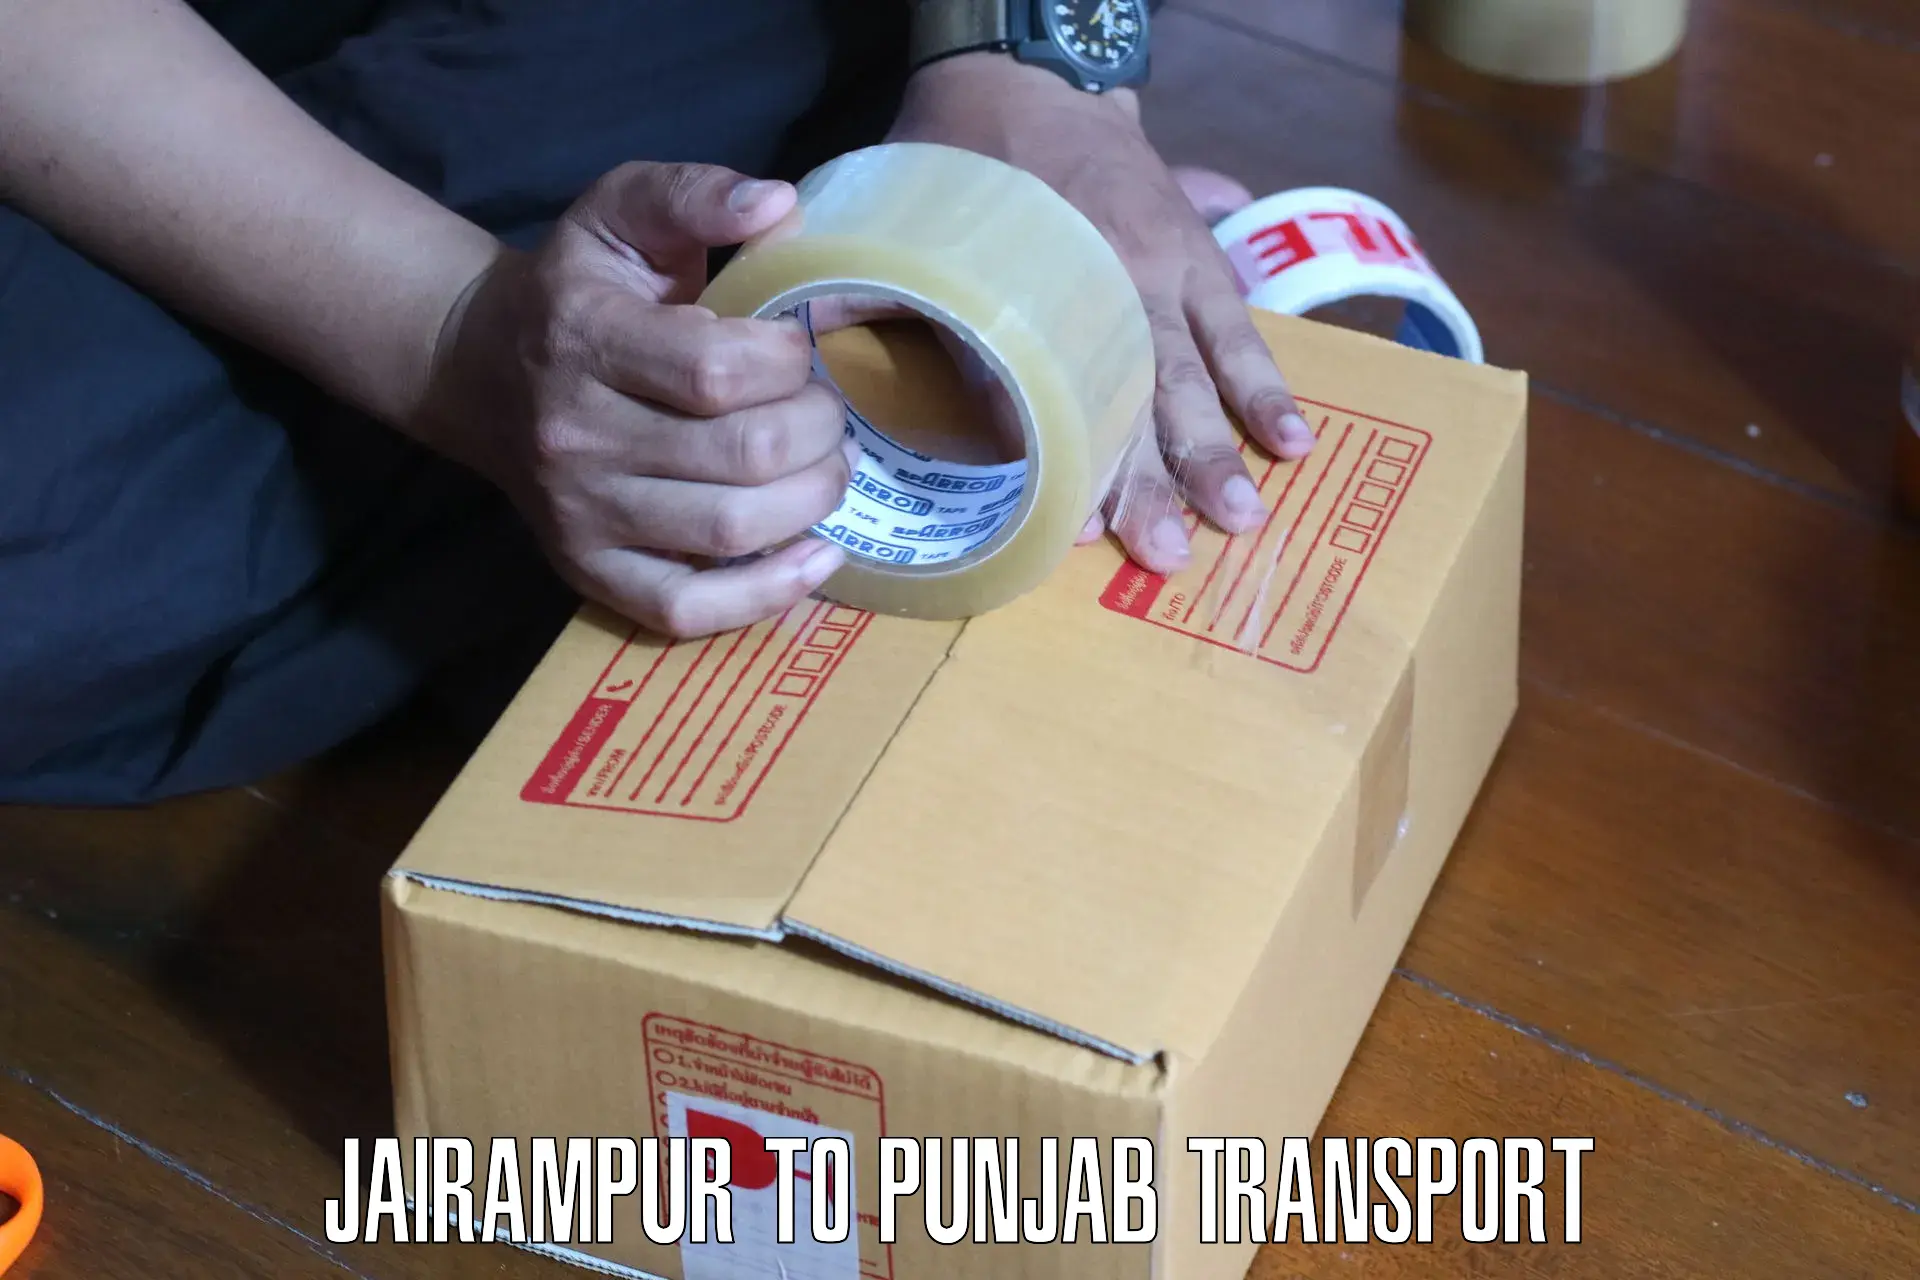 Furniture transport service Jairampur to Malout